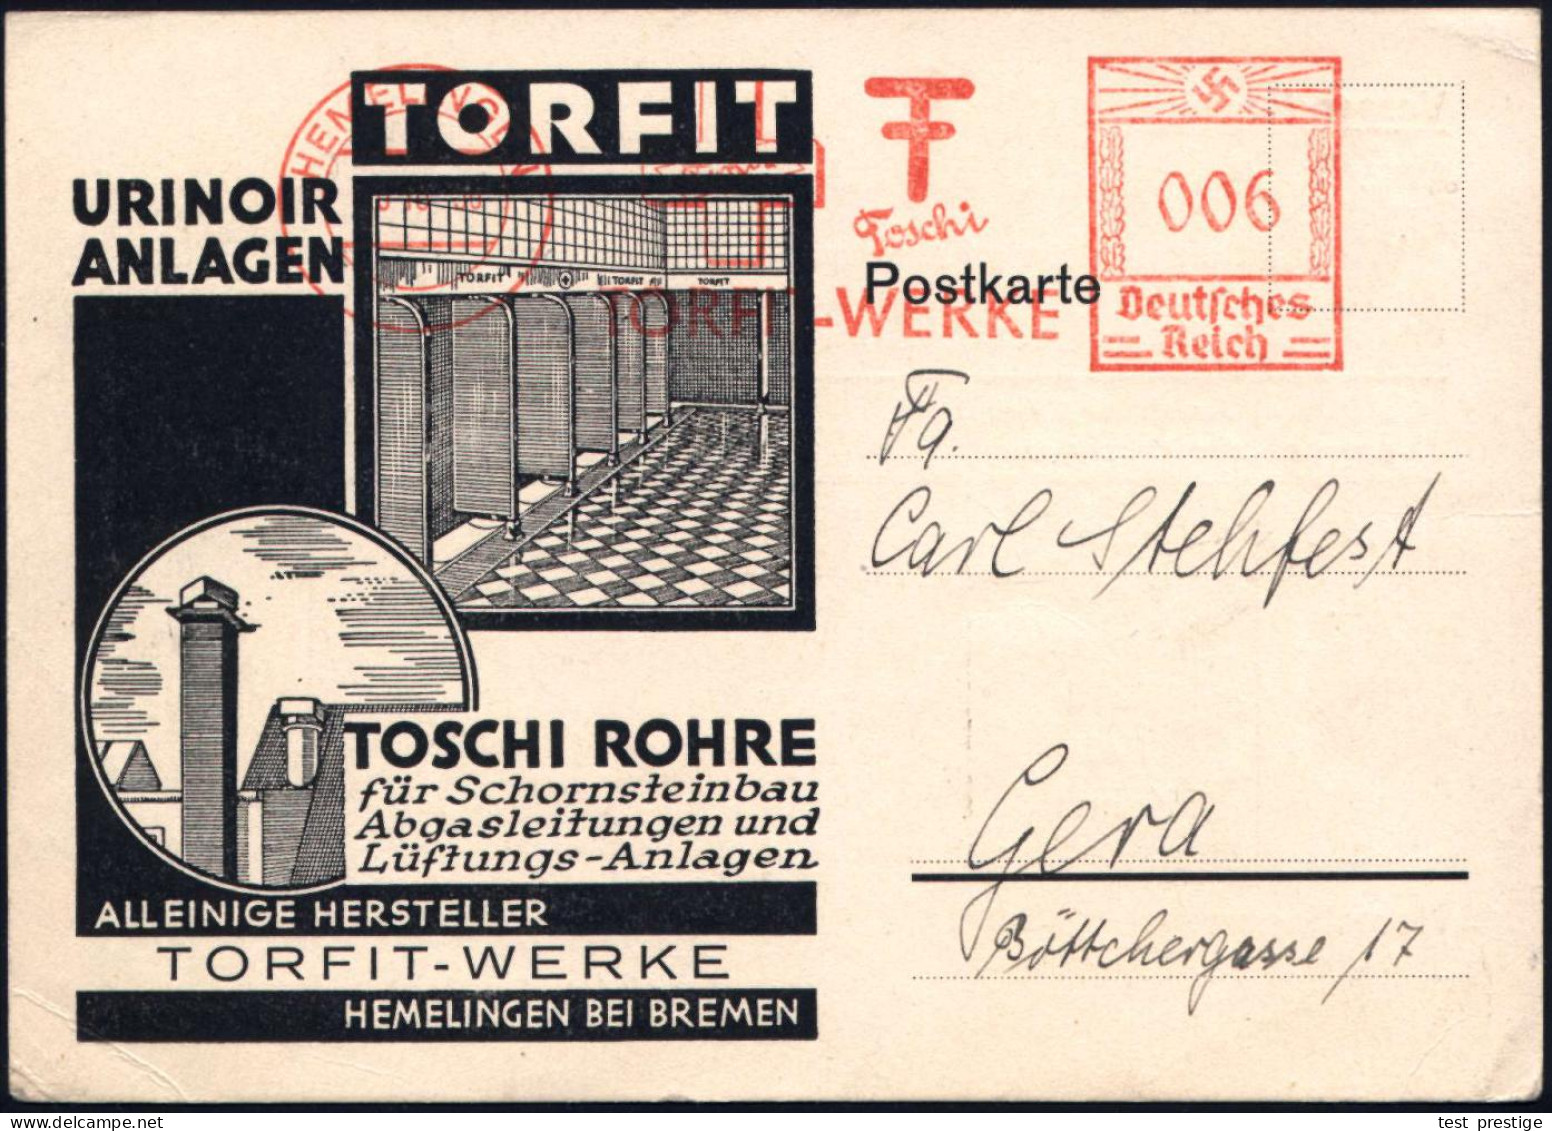 HEMELINGEN/ Toschi/ TORFIT-WERKE 1936 (16.10.) AFS Francotyp (Monogr.) Dekorative Reklame-Kt.: Urinoir, Schornstein-Abga - Feuerwehr